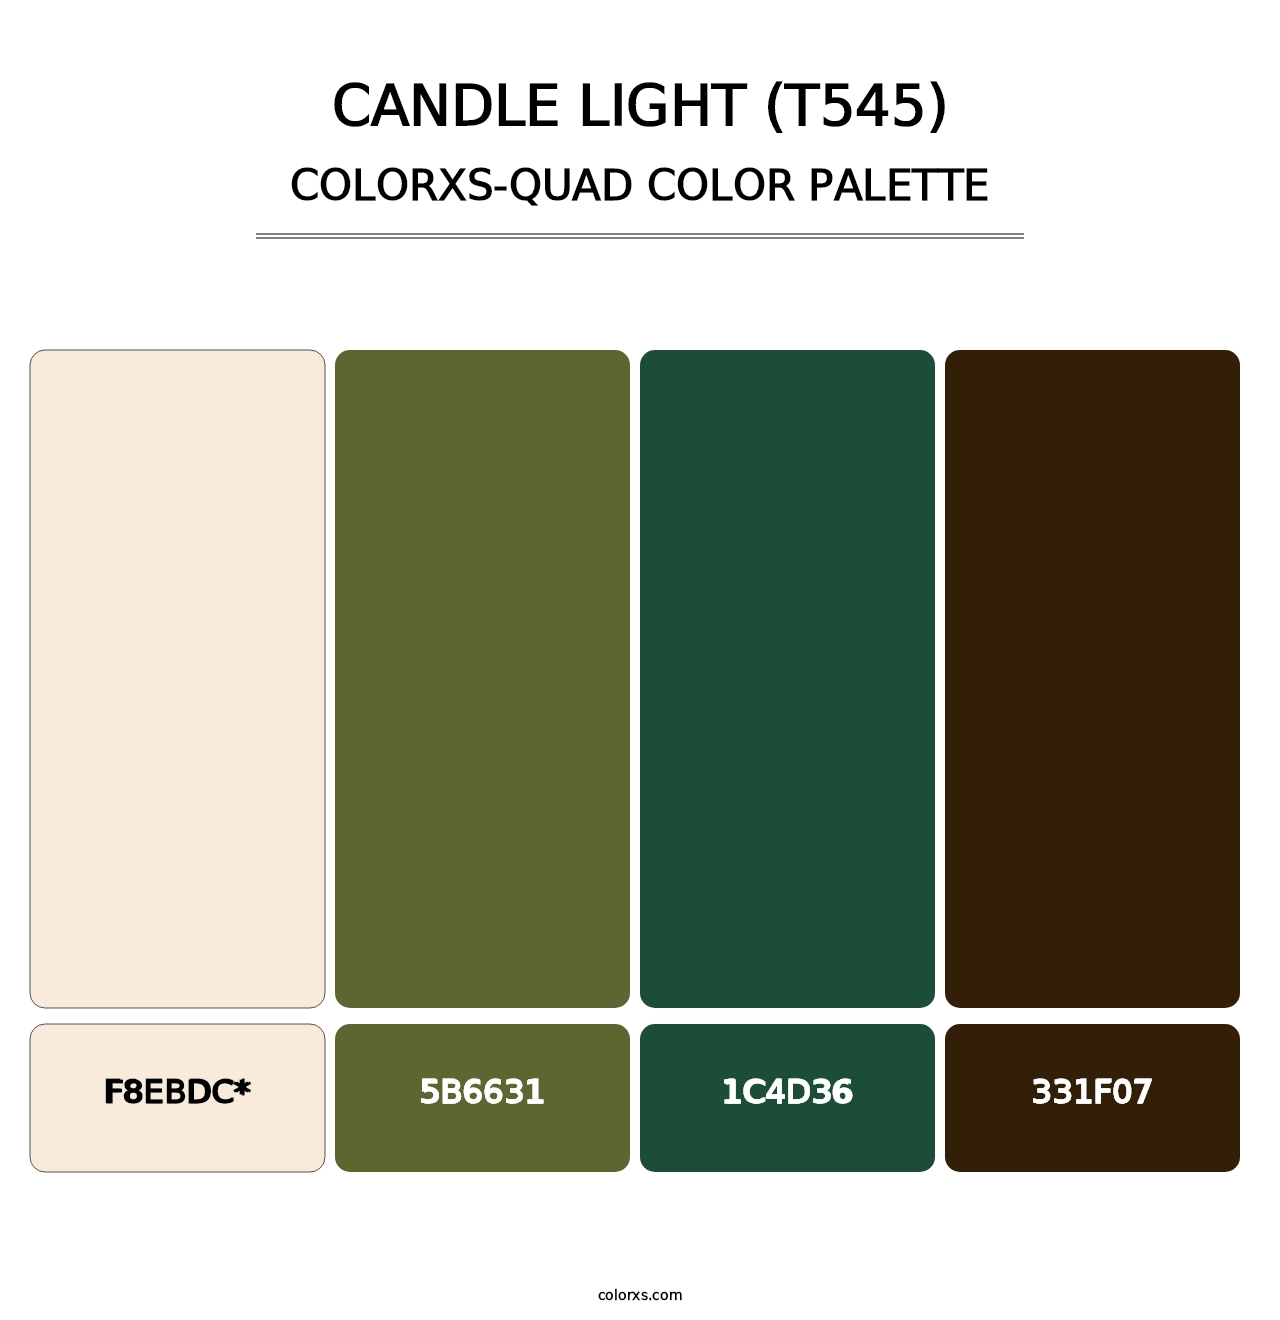 Candle Light (T545) - Colorxs Quad Palette